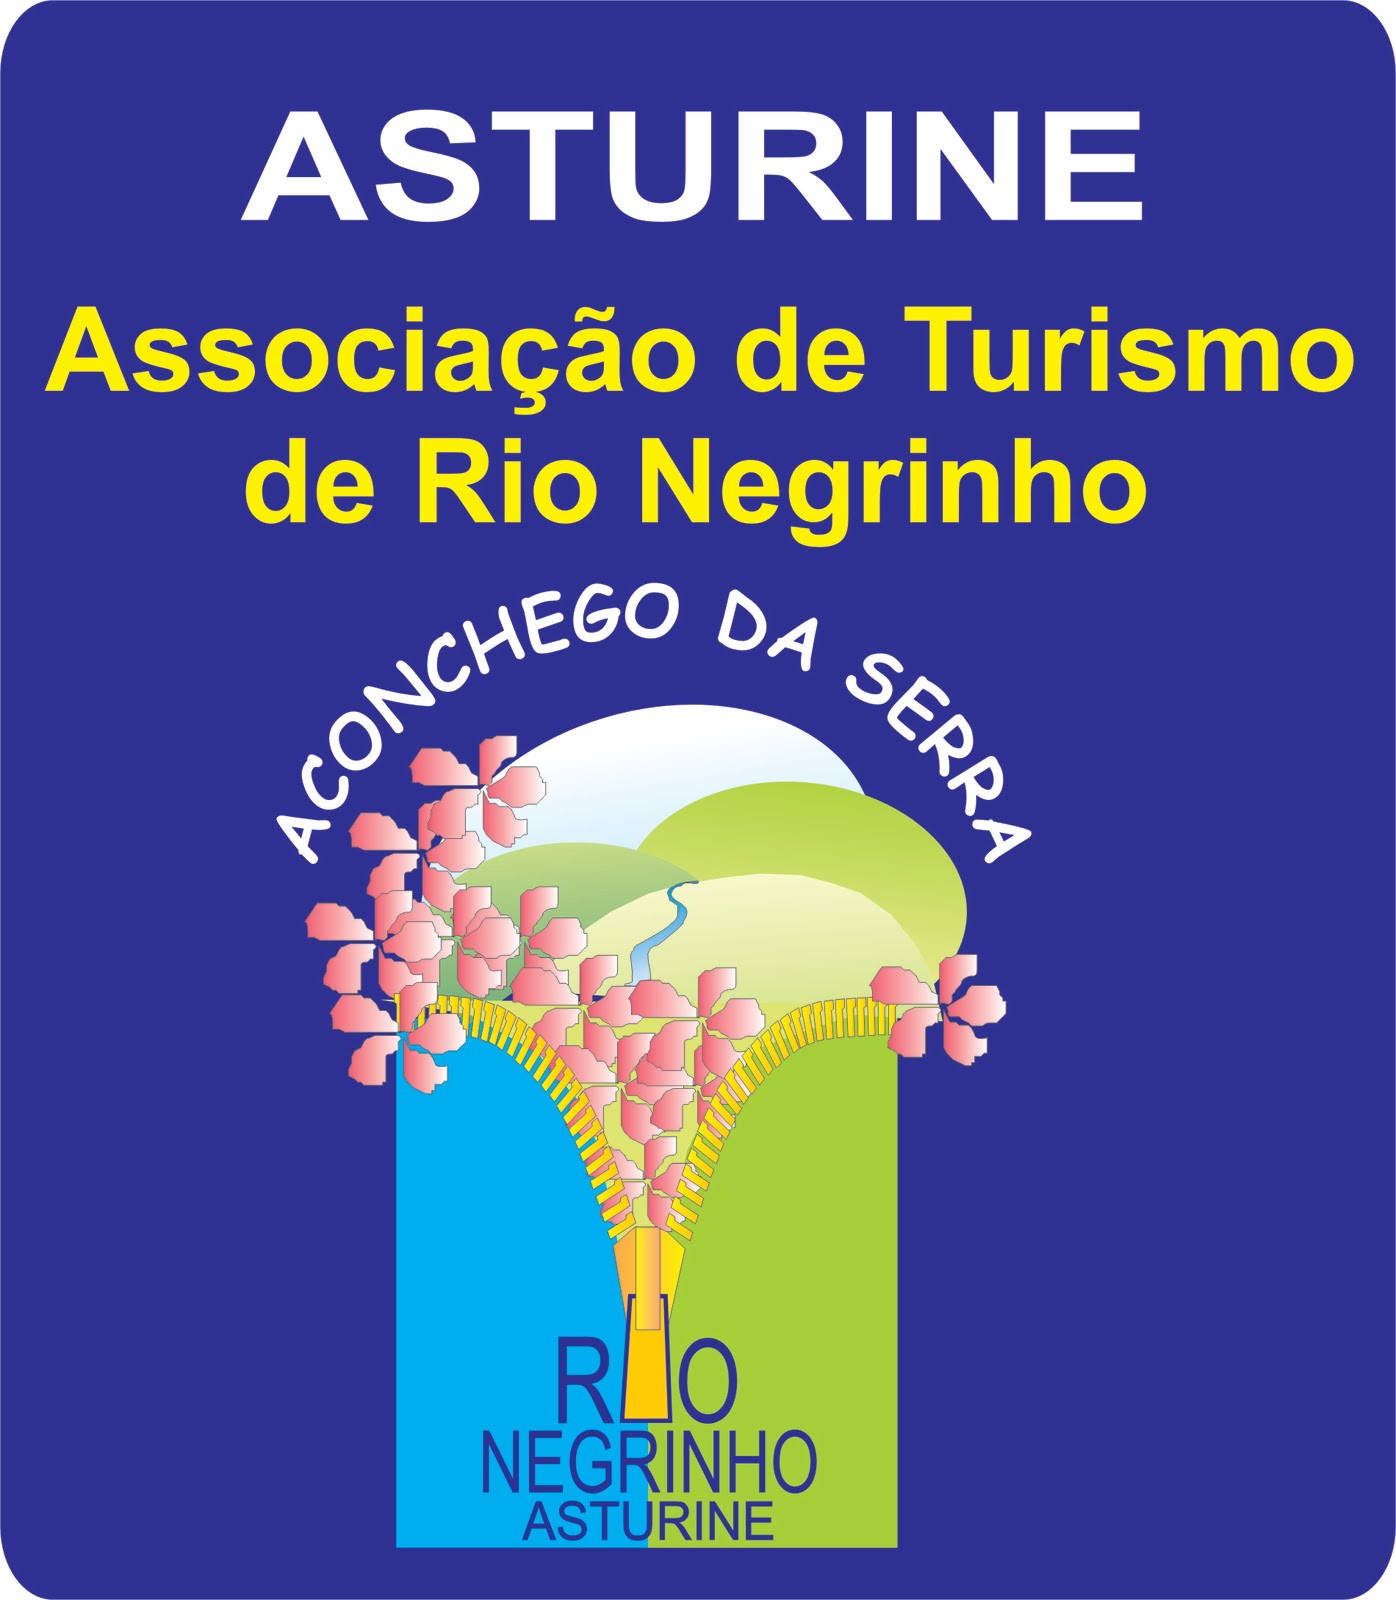 Asturine